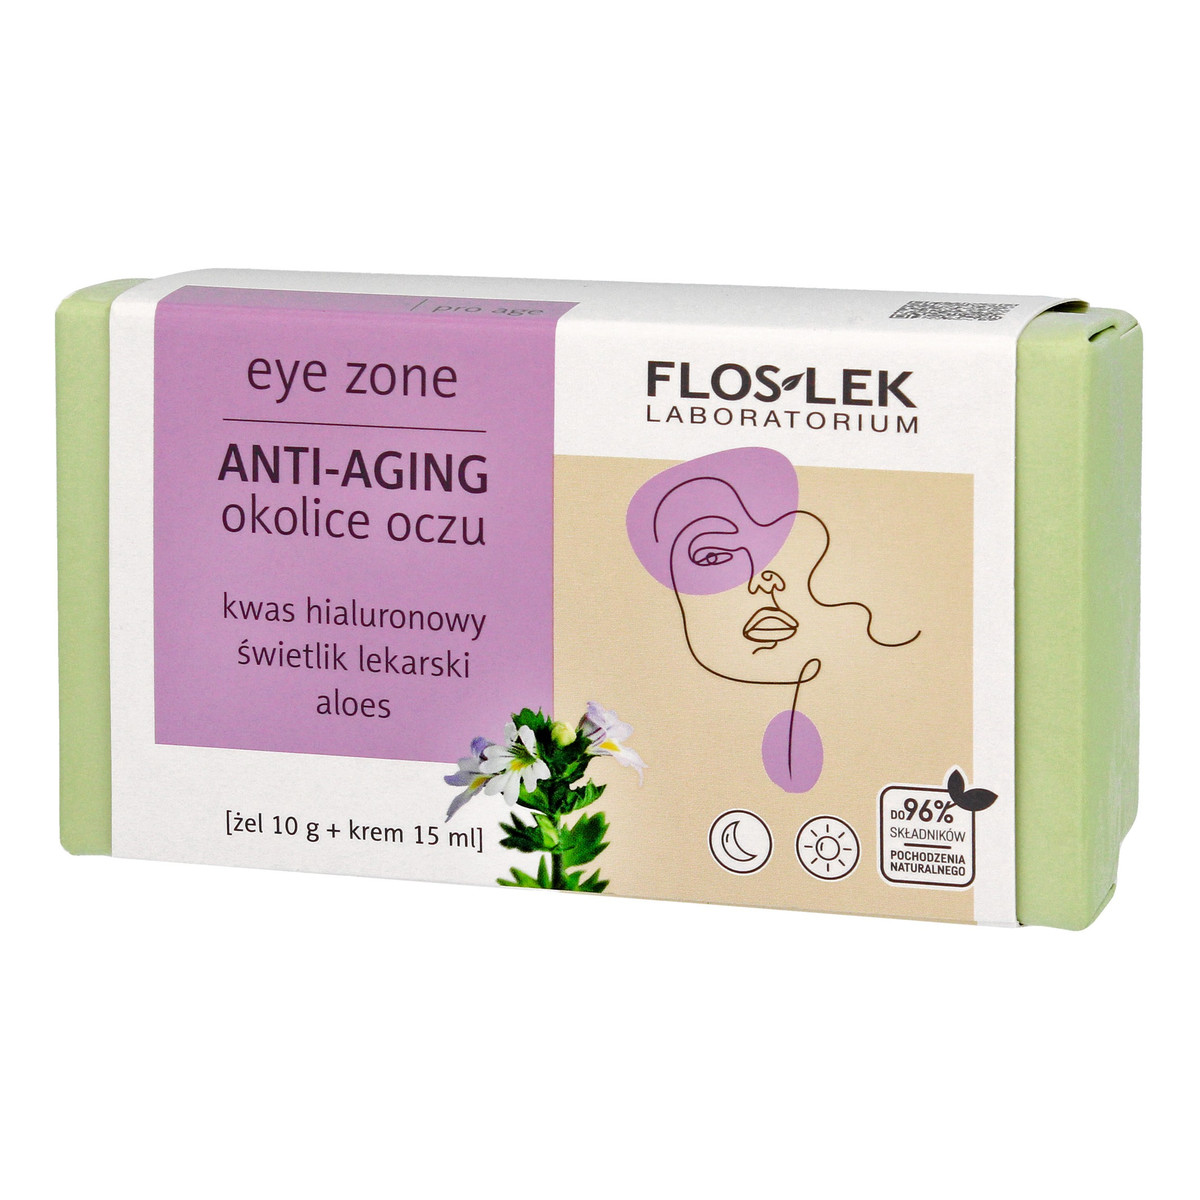 FlosLek Anti-Aging Zestaw prezentowy Eye Zone okolice oczu - Żel ze świetlikiem lekarskim i aloesem do powiek i pod oczy + Przeciwzmarszczkowy krem pod oczy